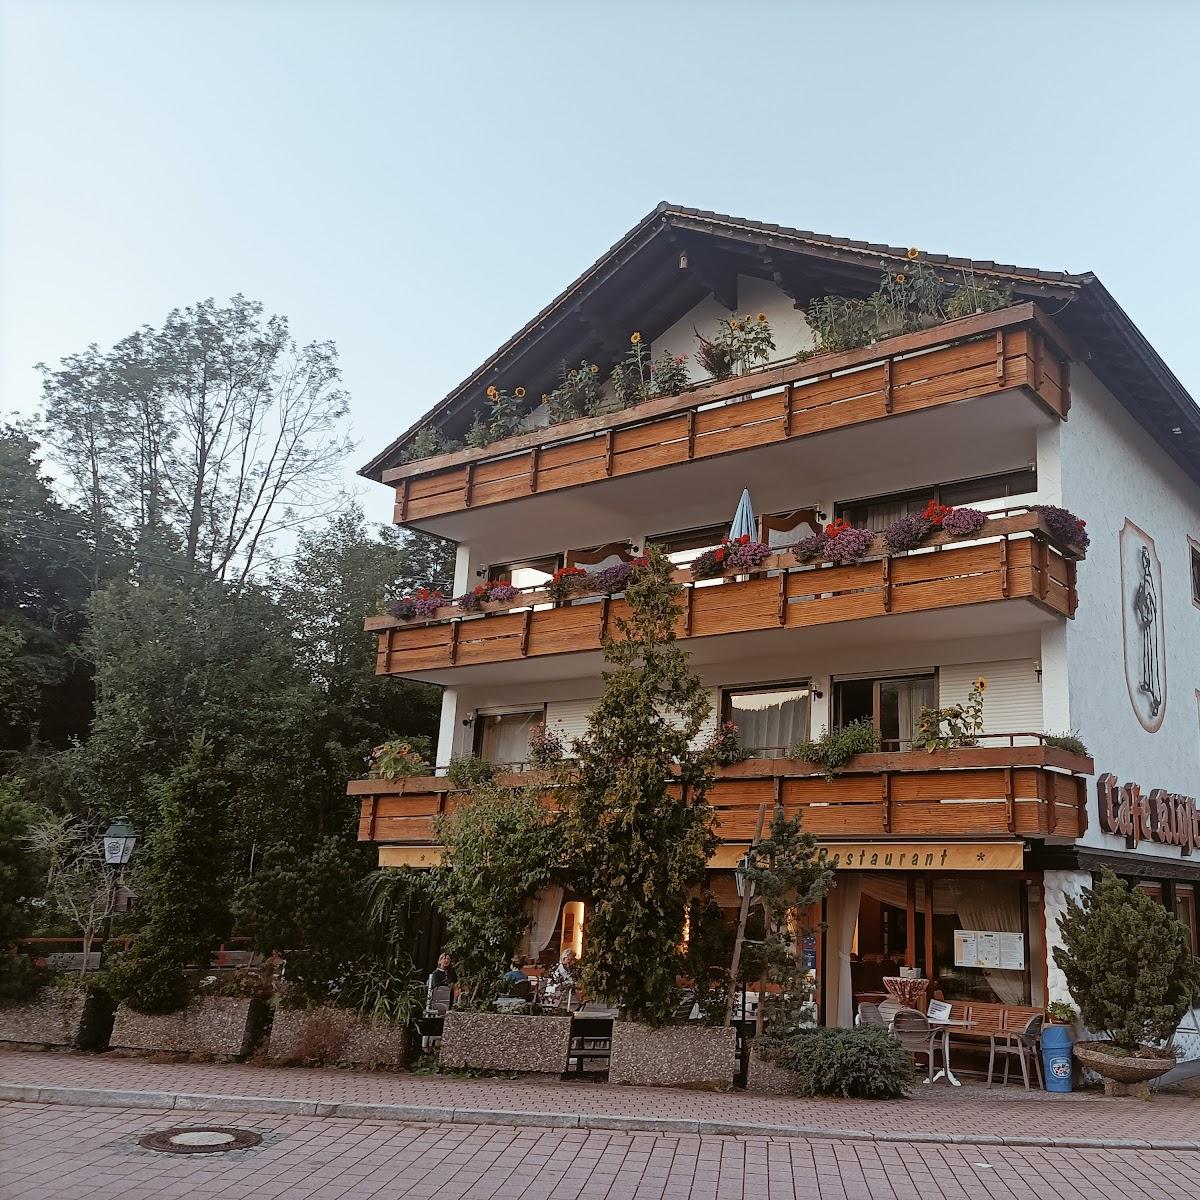 Restaurant "Hotel zum Hirsch GmbH" in Enzklösterle